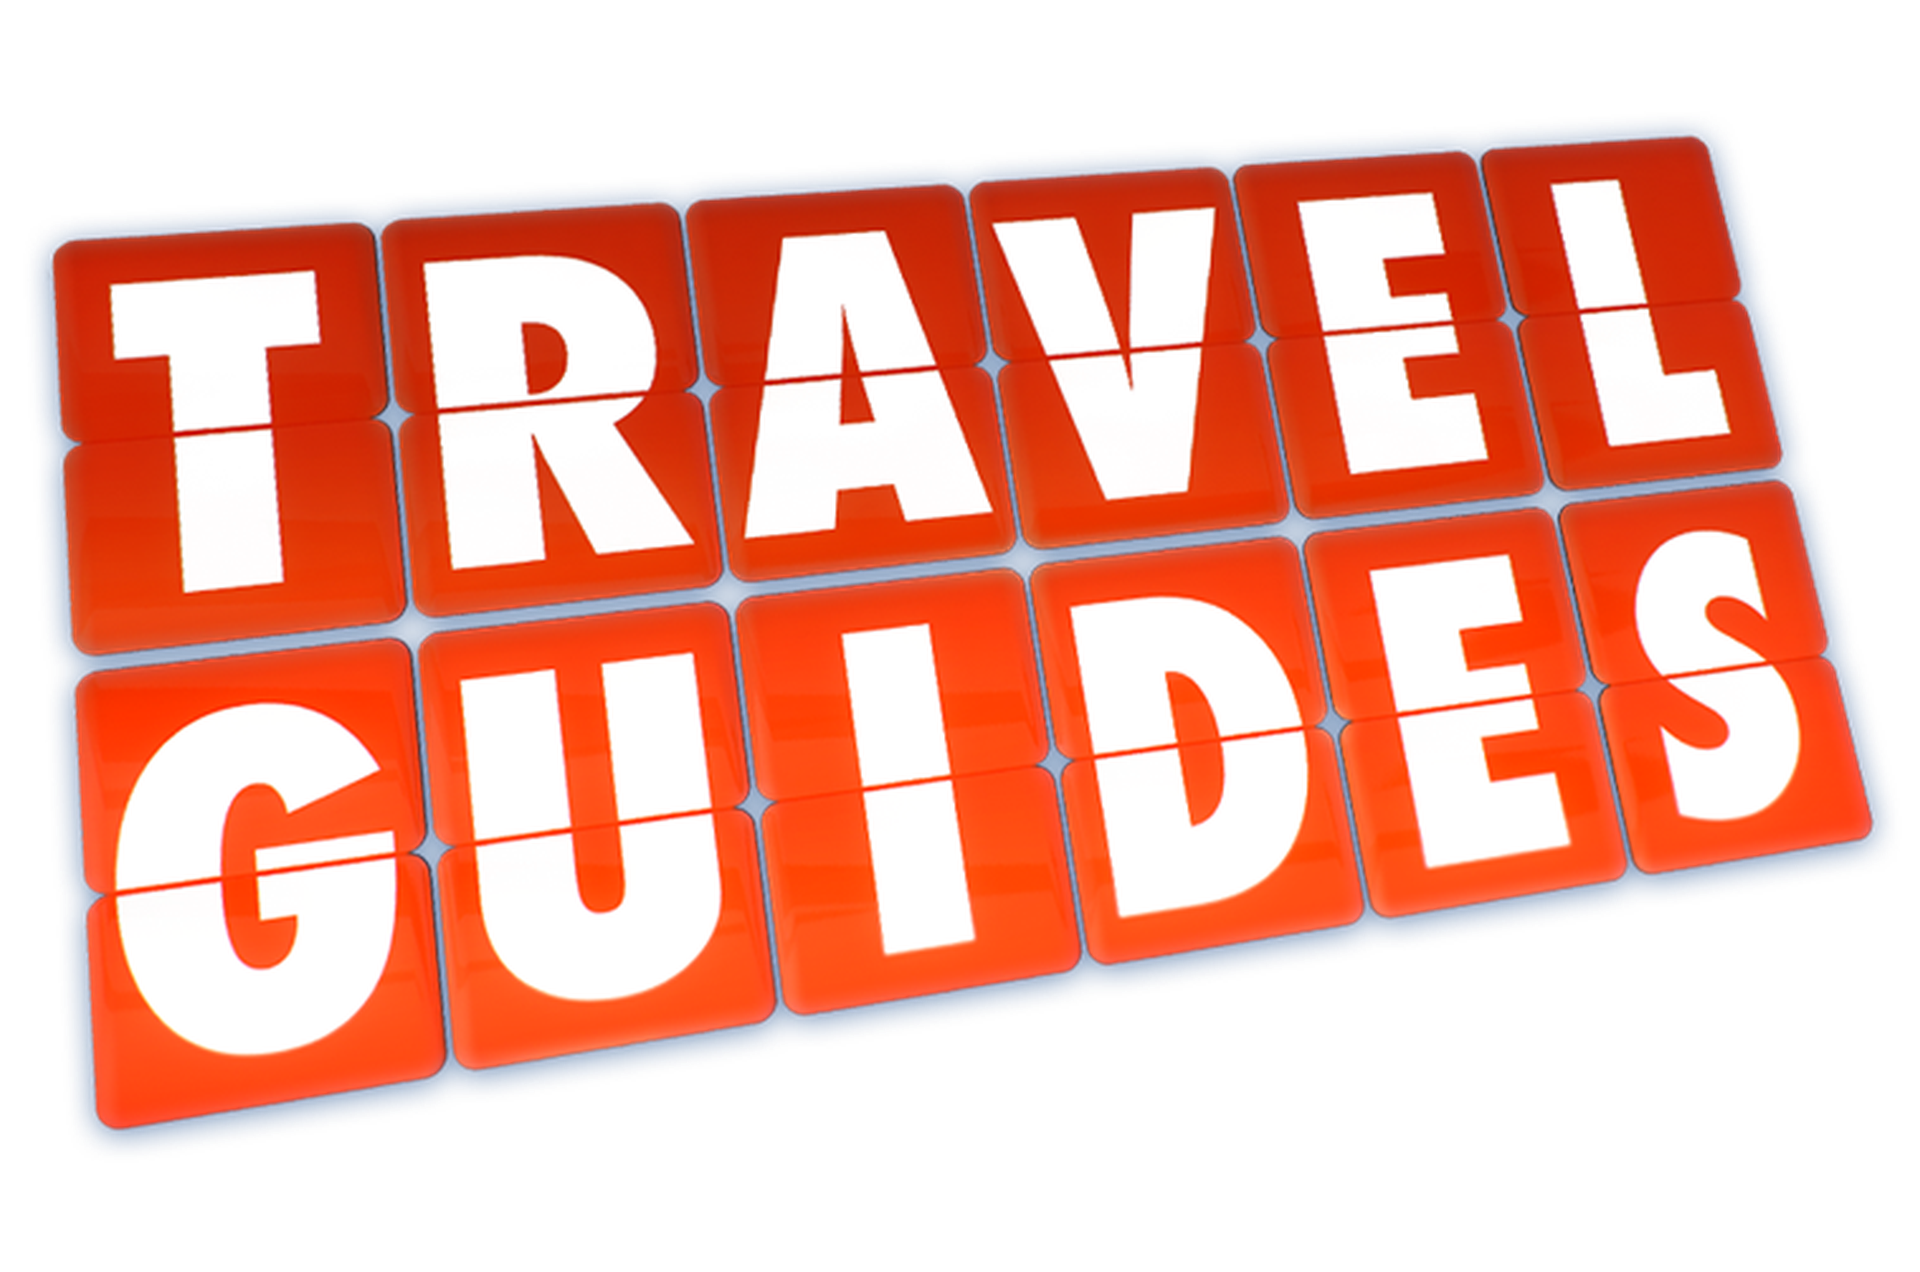 travel guide co ltd